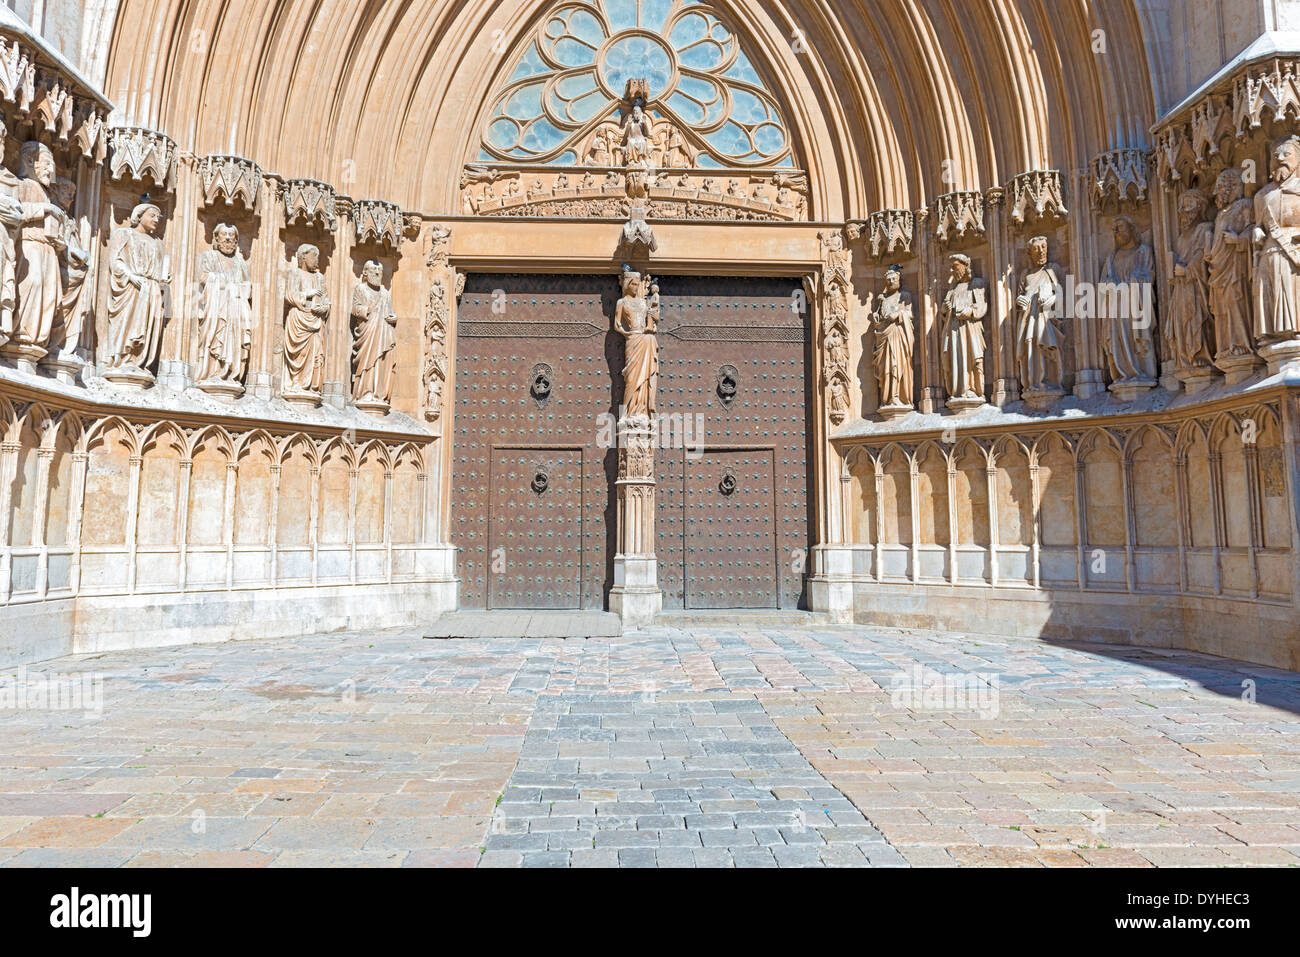 Main portal of the Cathedral of Saint Mary in Tarragona, Catalonia. Stock Photo